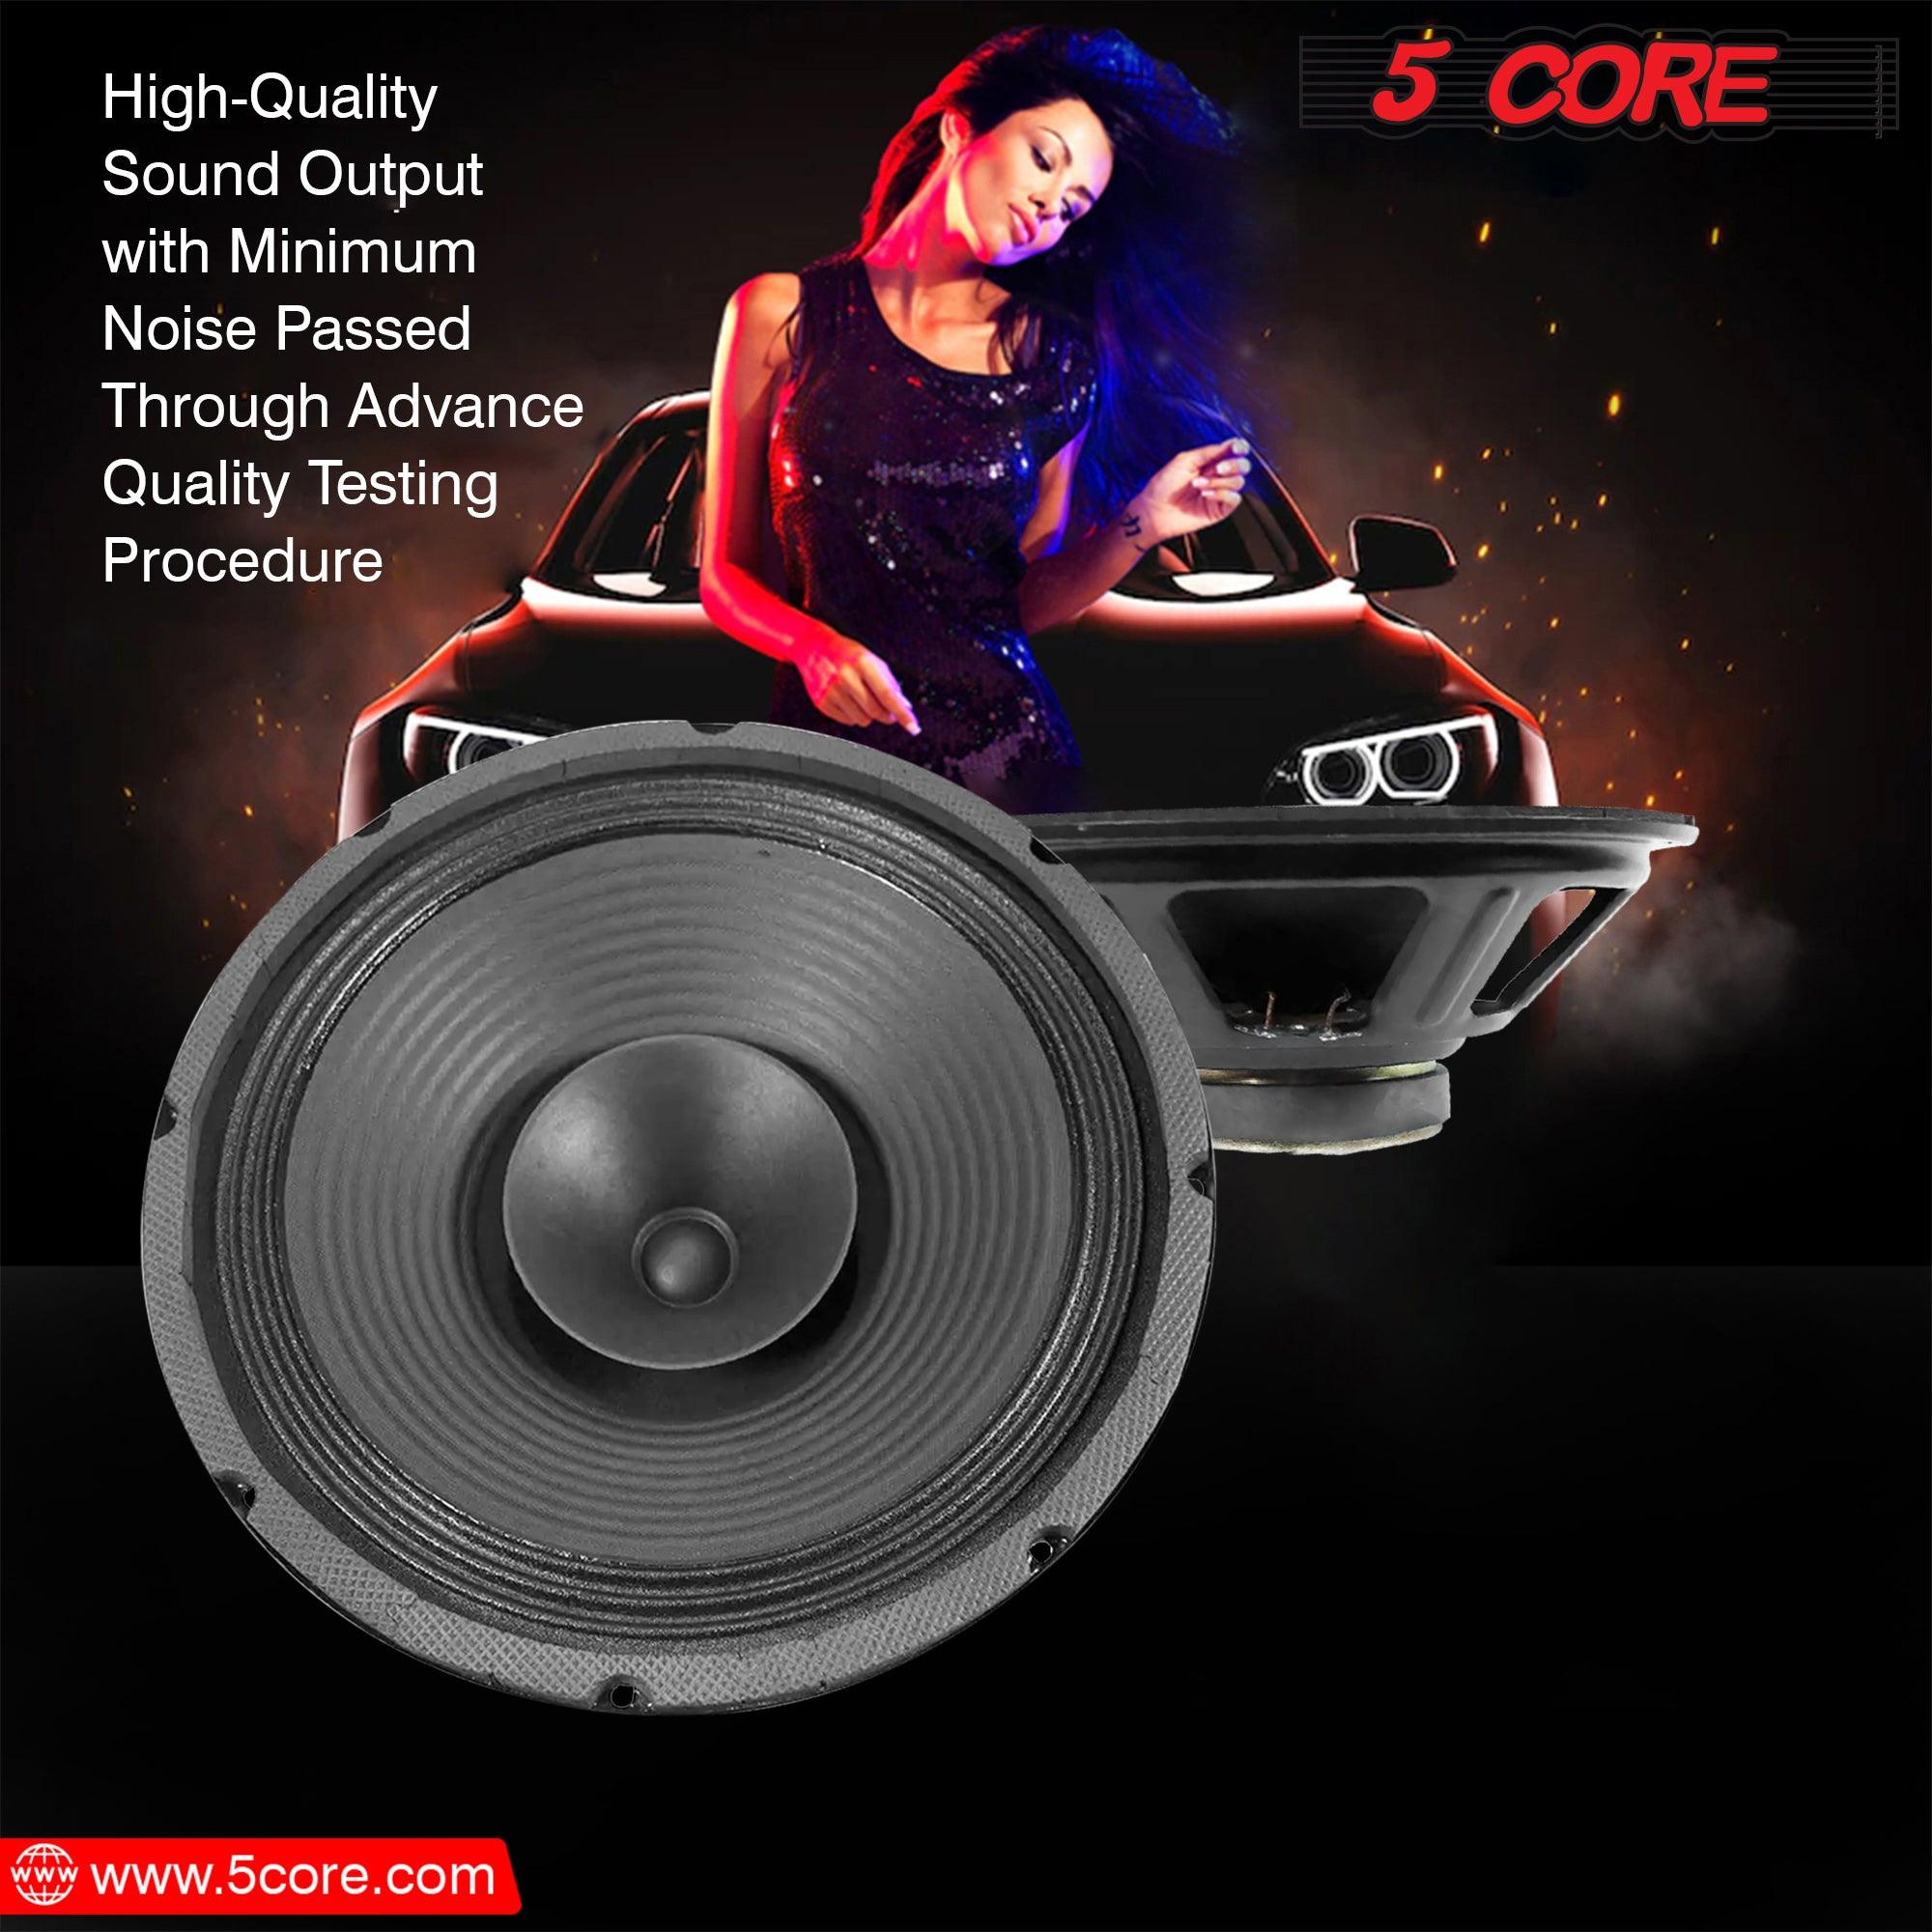 12 inch Subwoofer Speaker FR-12120DC 2 Pcs - VirtuousWares:Global